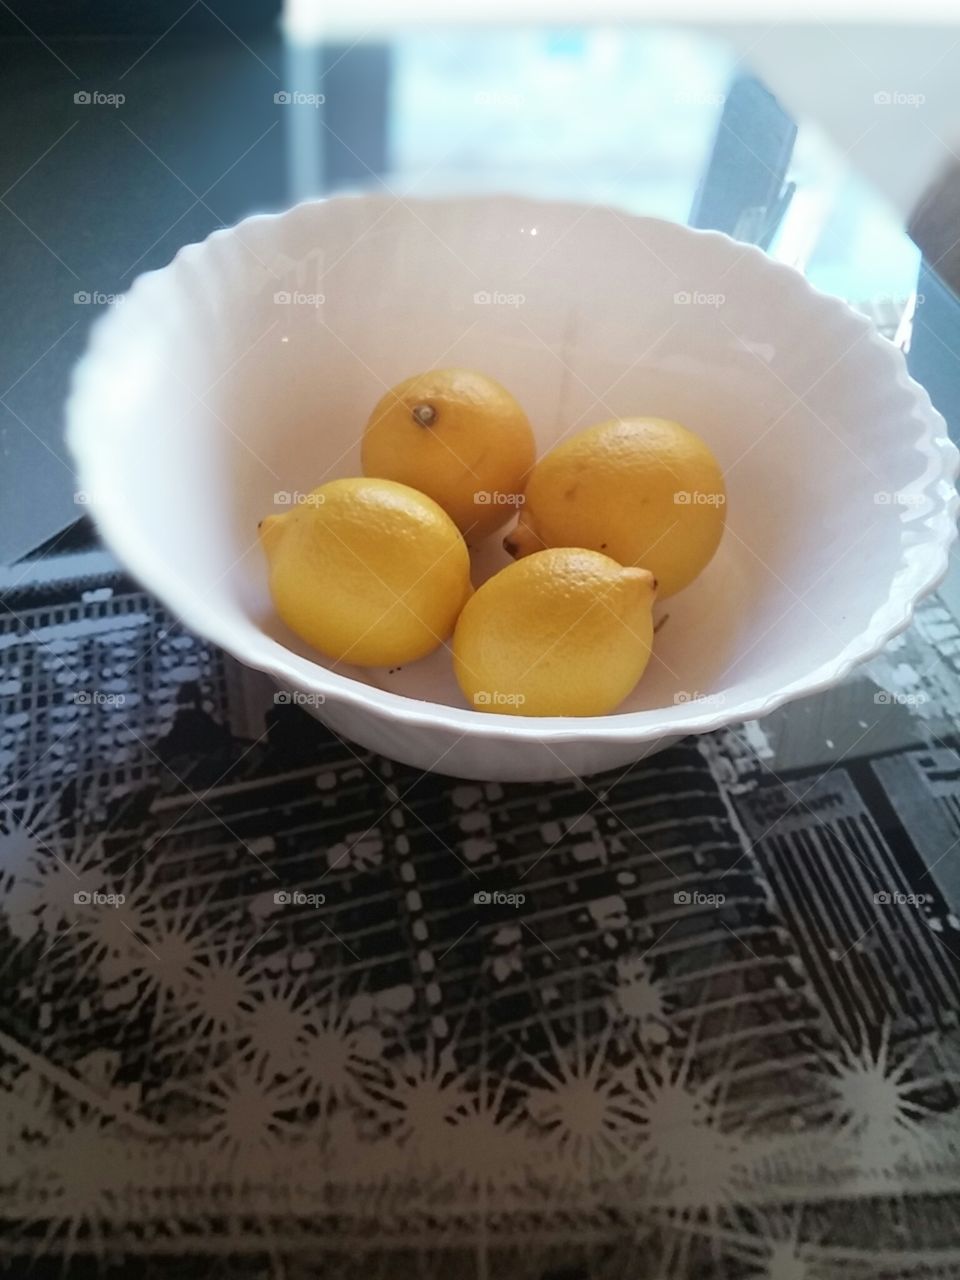 #lemons#lemon#healthy#yellow#fruits